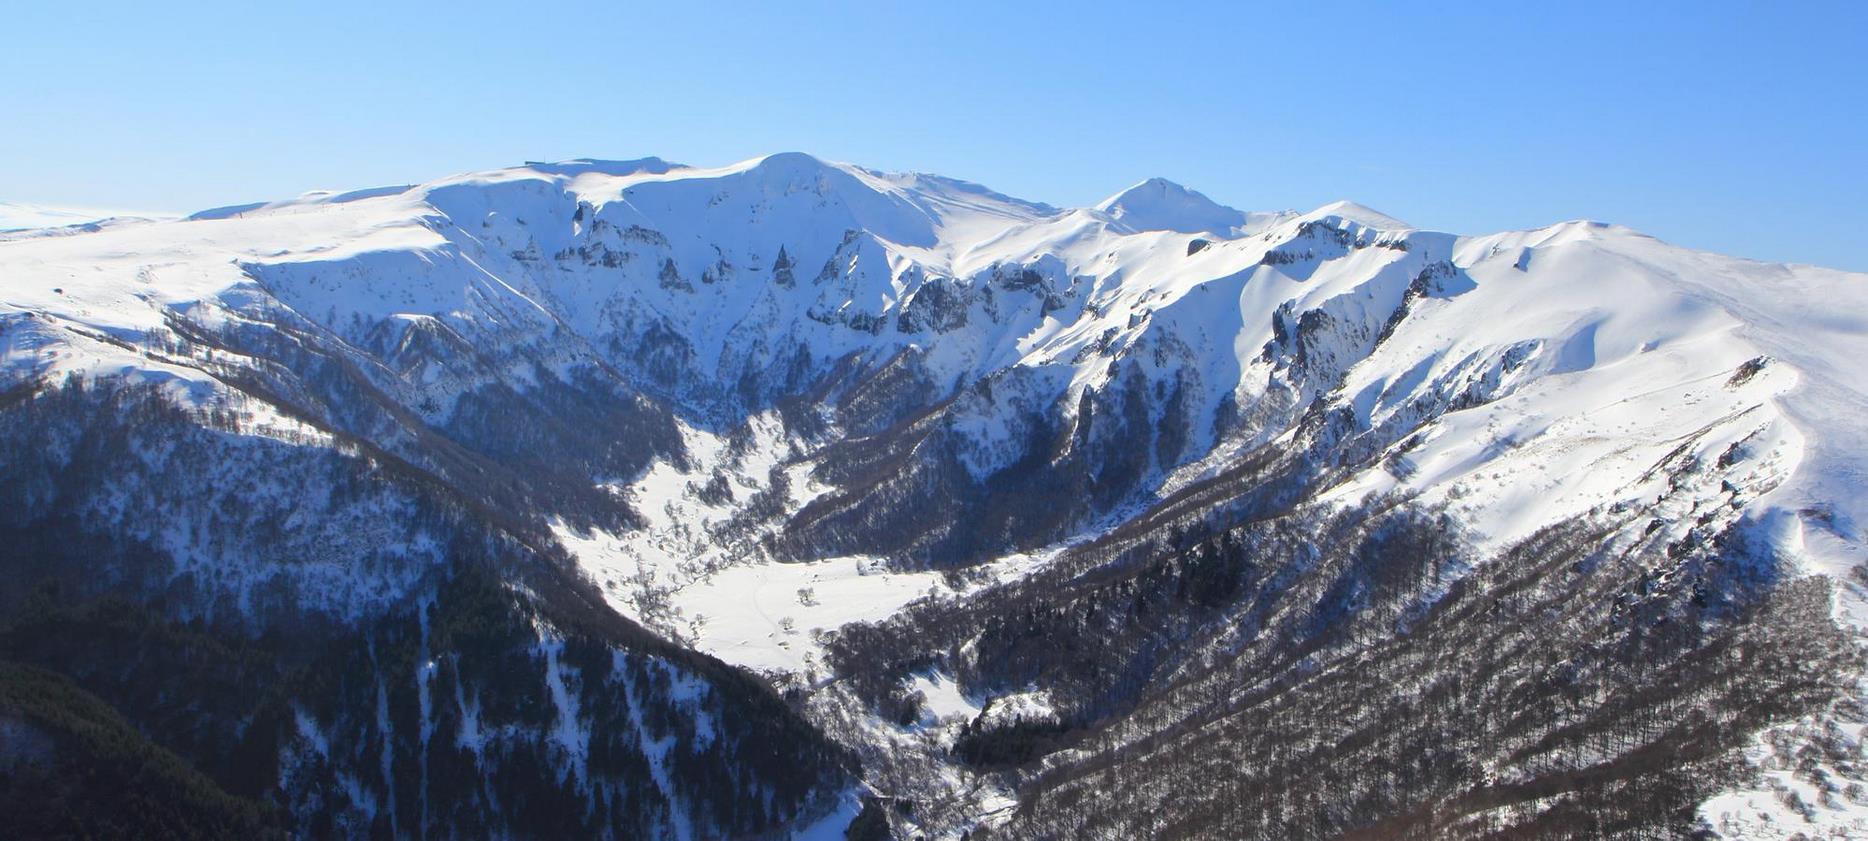 Super Besse - La vallee de Chaudefour sous la neige